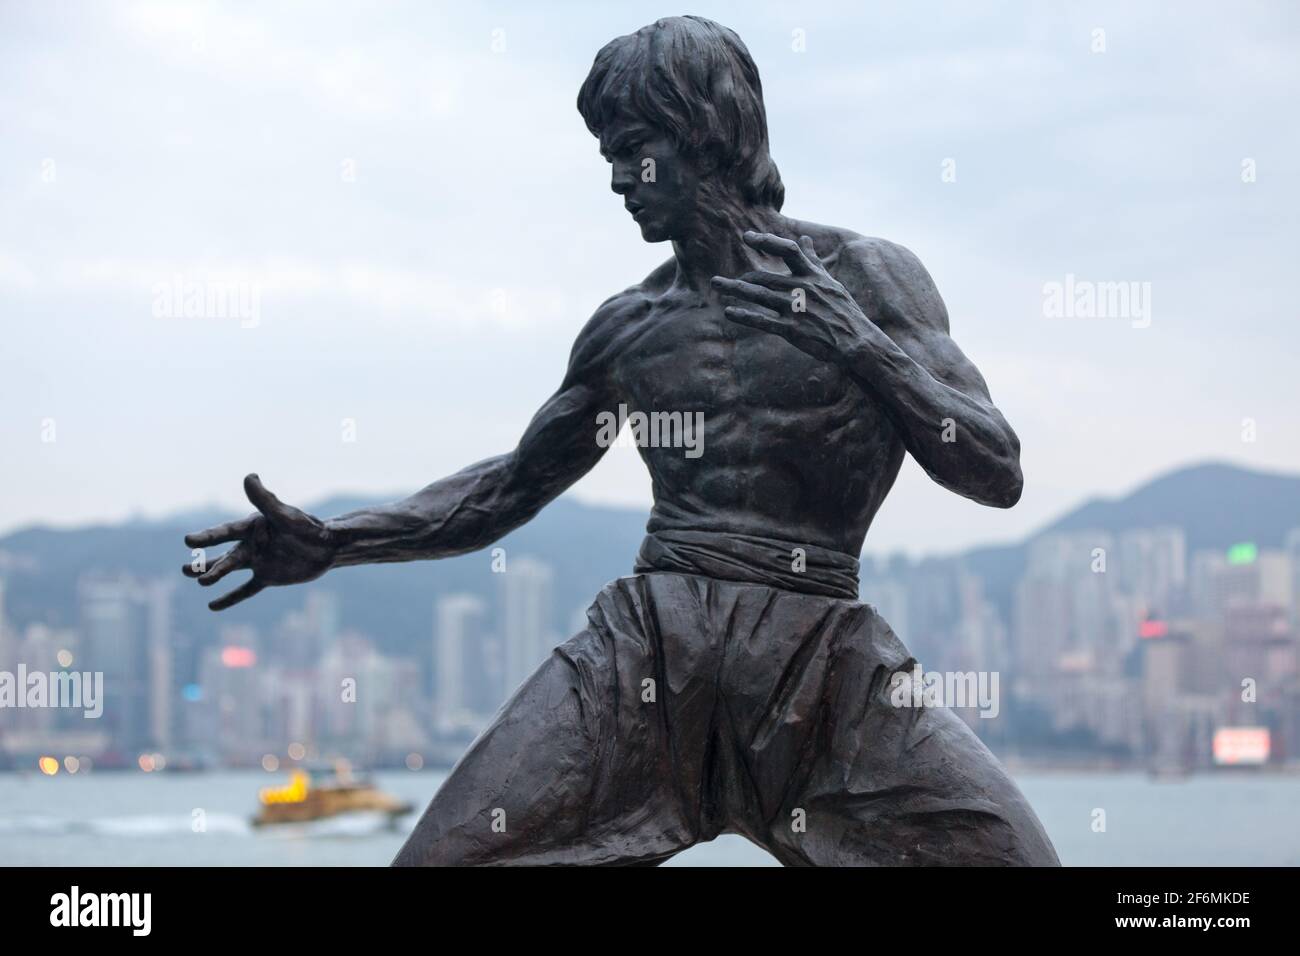 Hong Kong, Cina - Marzo 24 2014: La statua di Bruce Lee a Hong Kong è una statua commemorativa in bronzo dell'artista marziale Bruce Lee creata dallo scultore CA Foto Stock